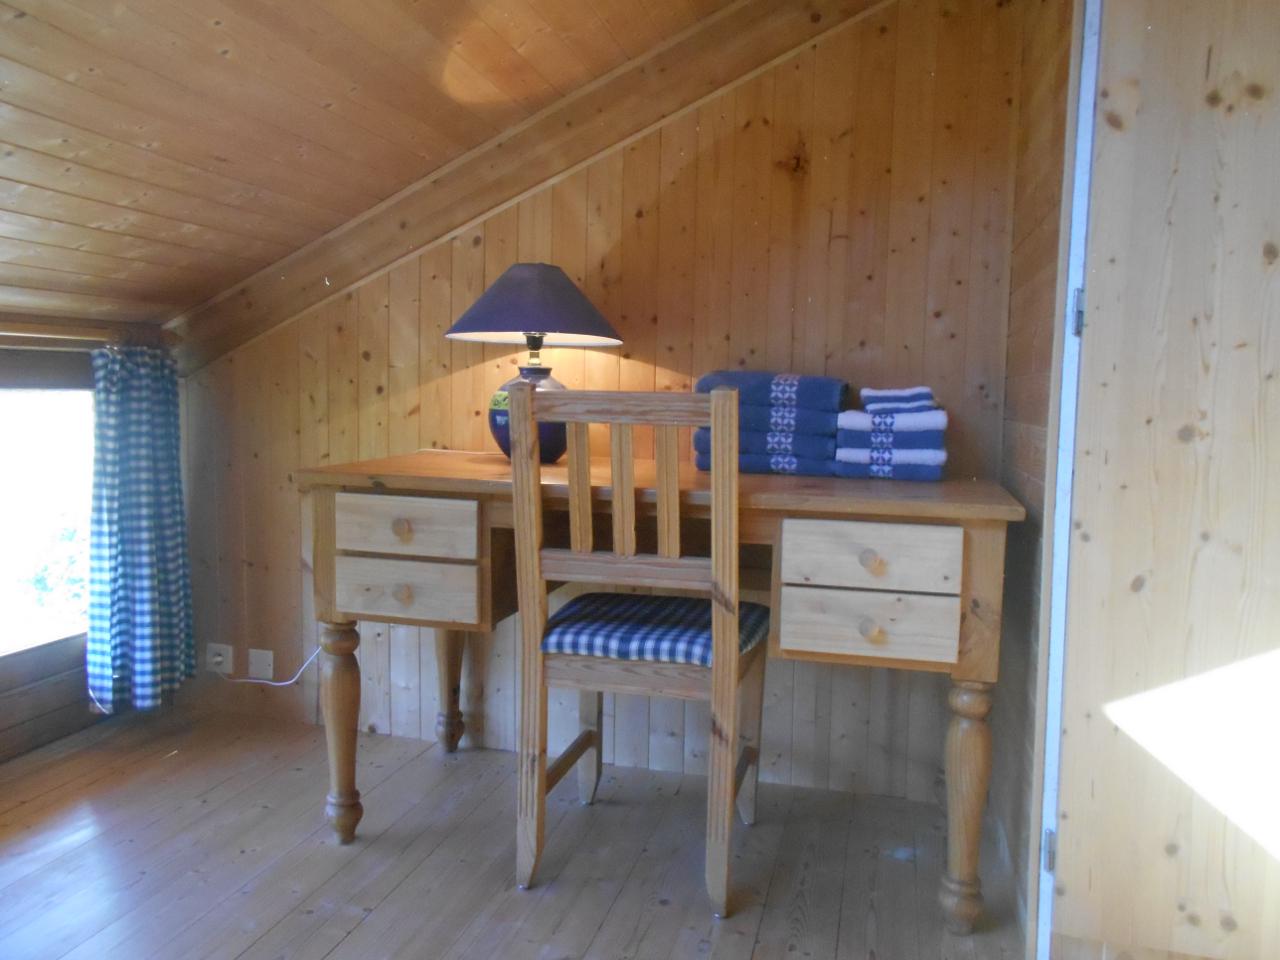 Hôte GreenGo: VALRELEY Maison d'hôtes eco-friendly et bain nordique chauffé au feu de bois - Image 11